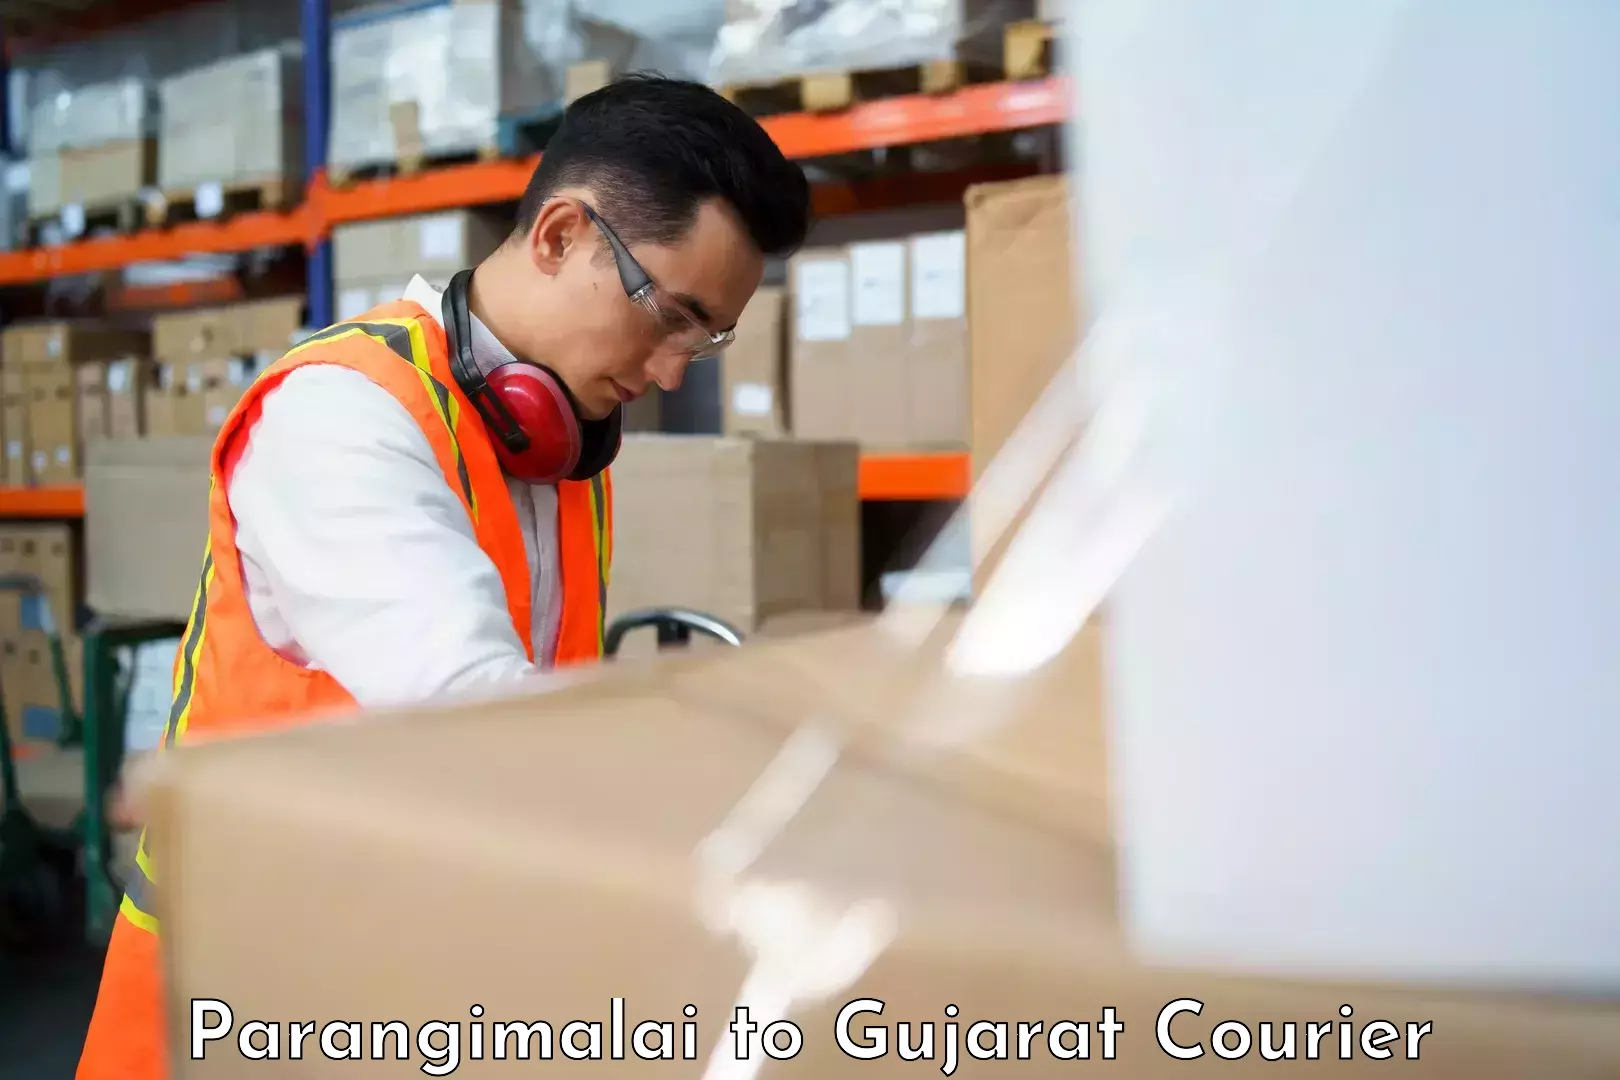 Professional furniture movers Parangimalai to Patan Gujarat